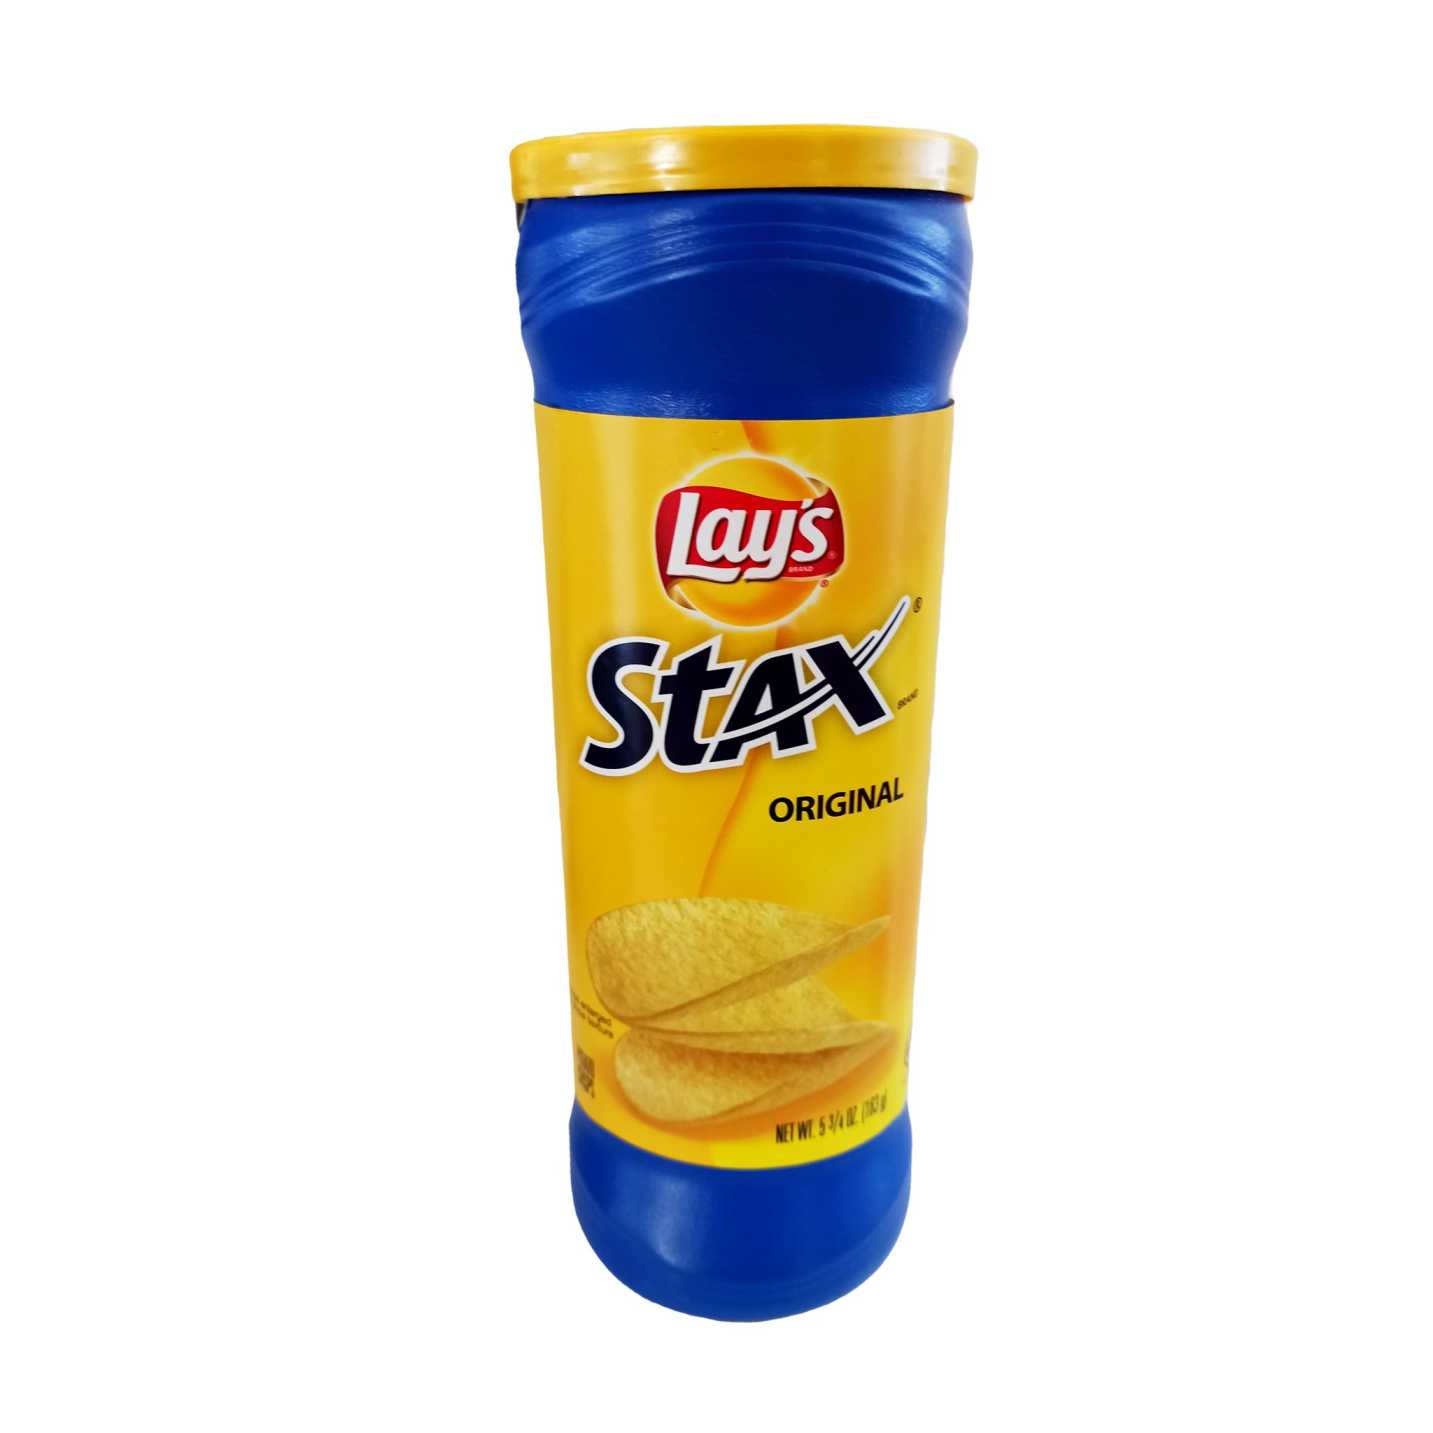 Lay's Stax Original לייס ציפס אורגינל - טעימים